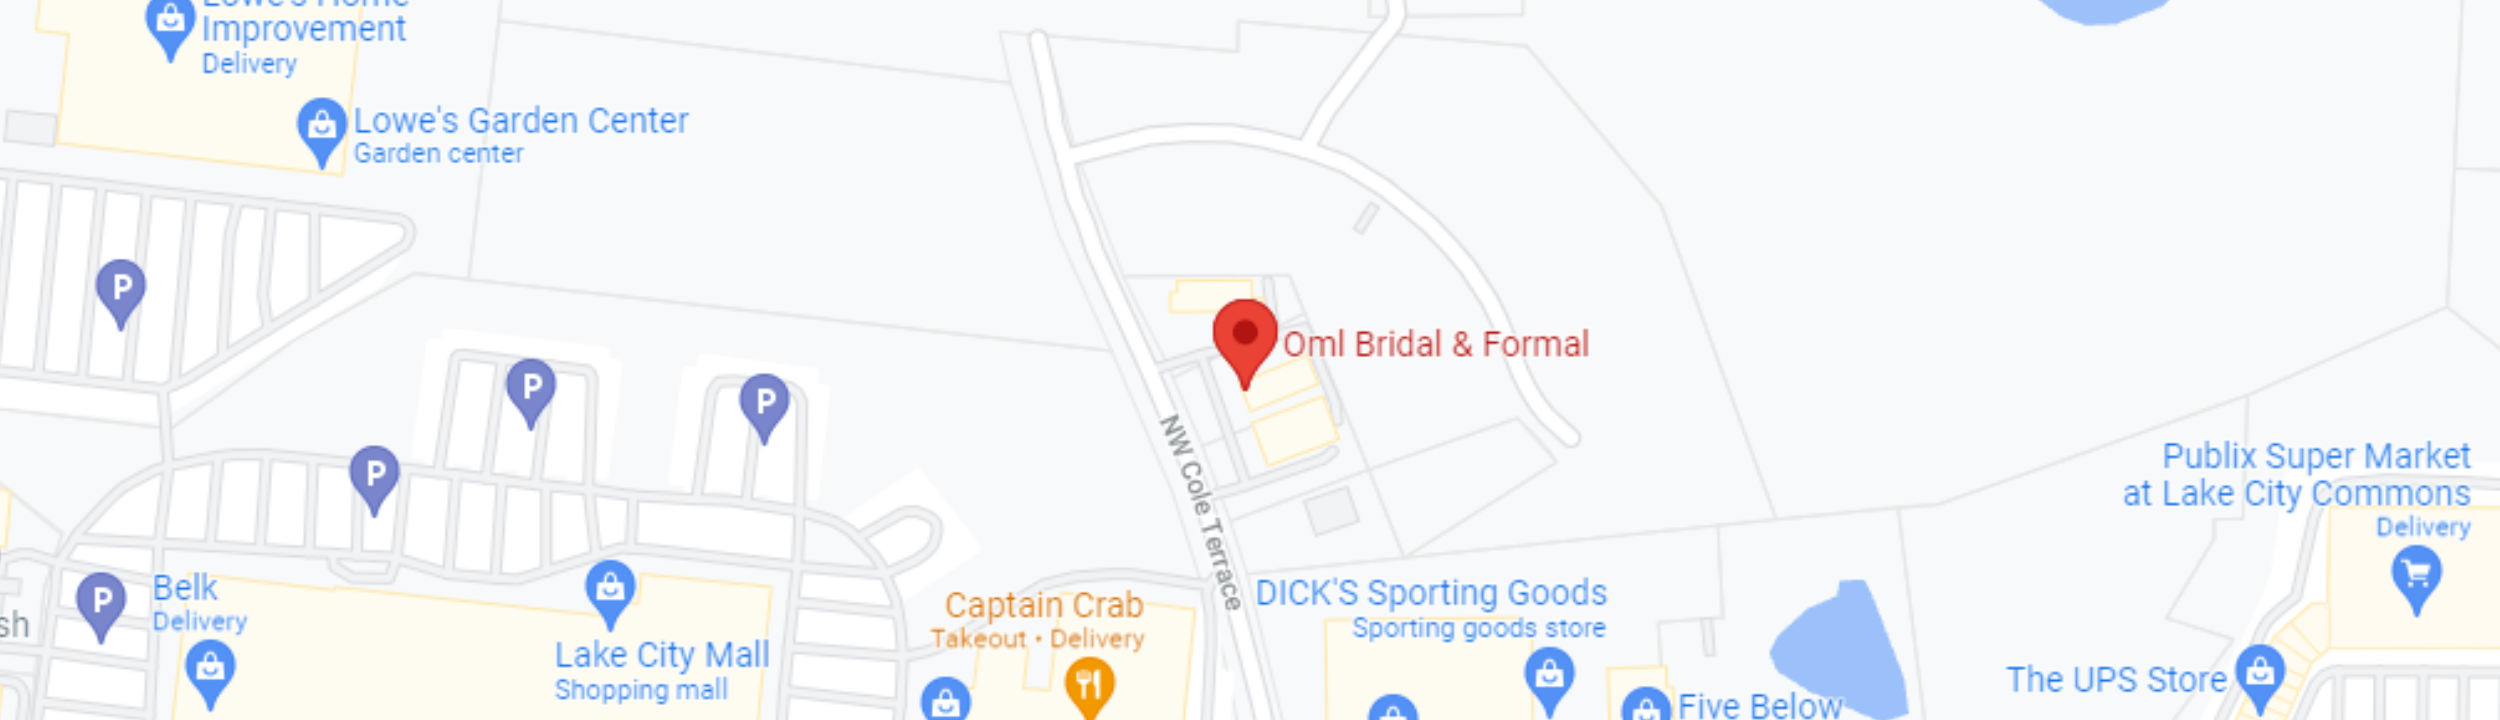 OML Bridal & Formal location